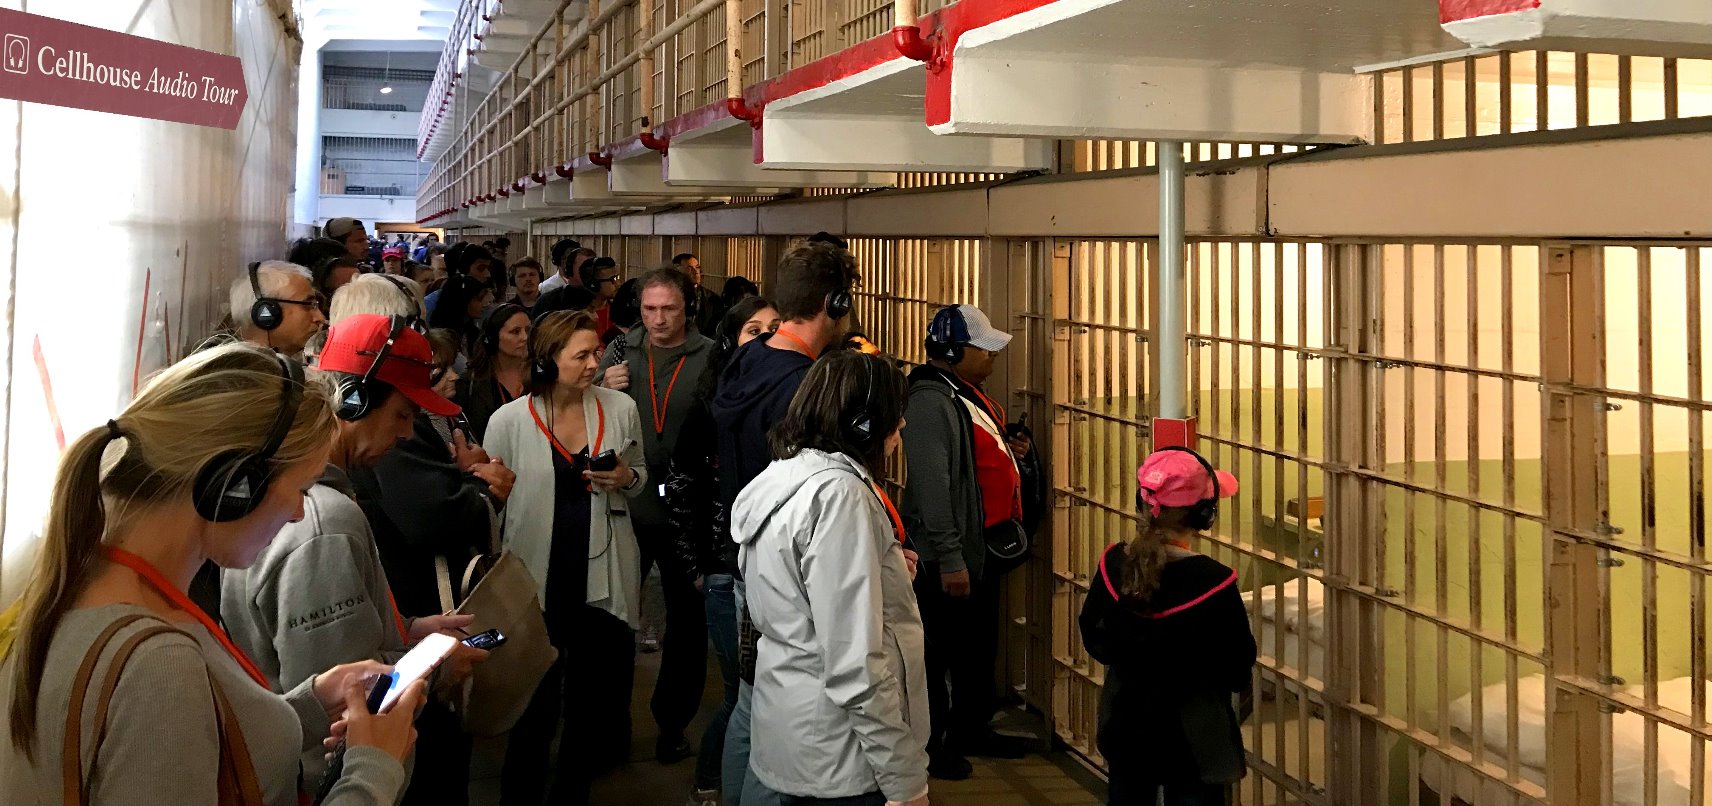 alcatraz-prison-cells-audi-tour-cellhouse-guide